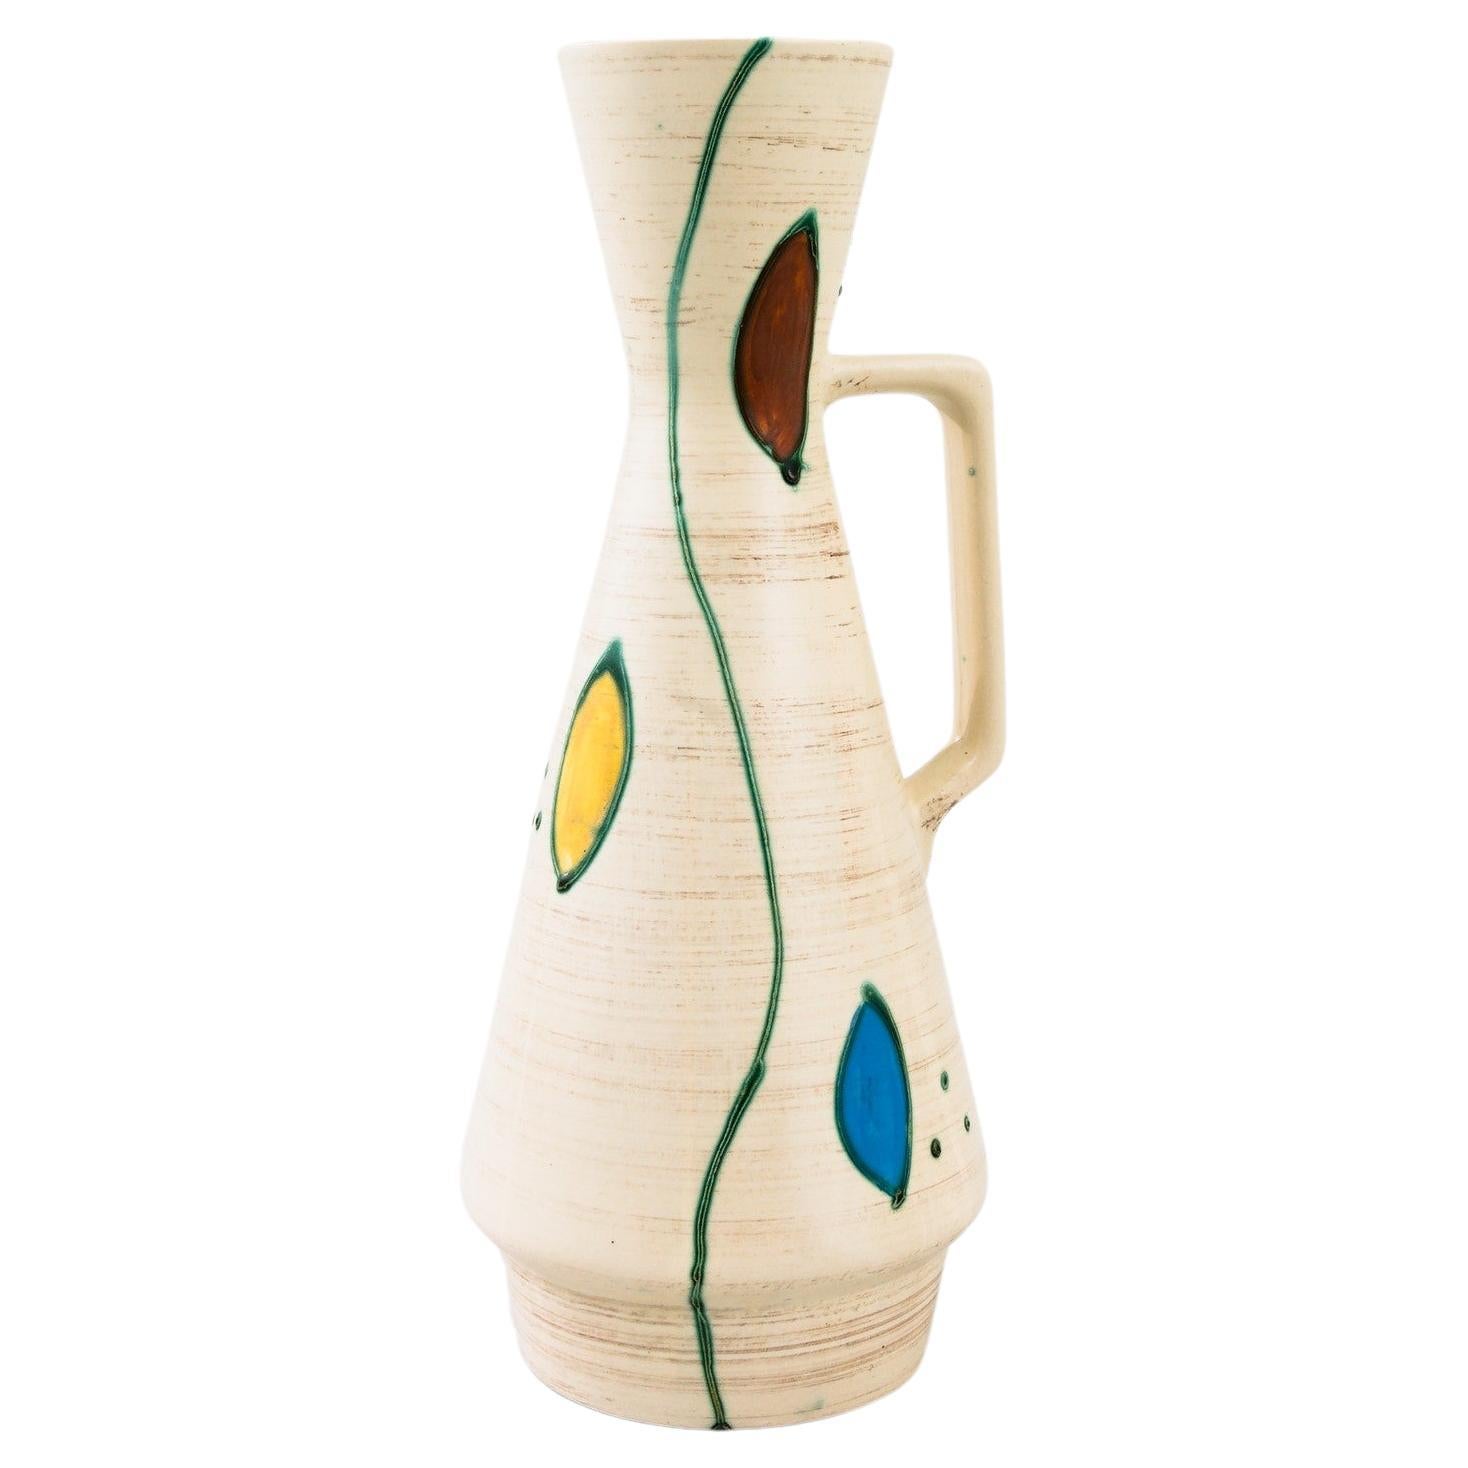 Vase en céramique The Moderns Moderns des années 1960